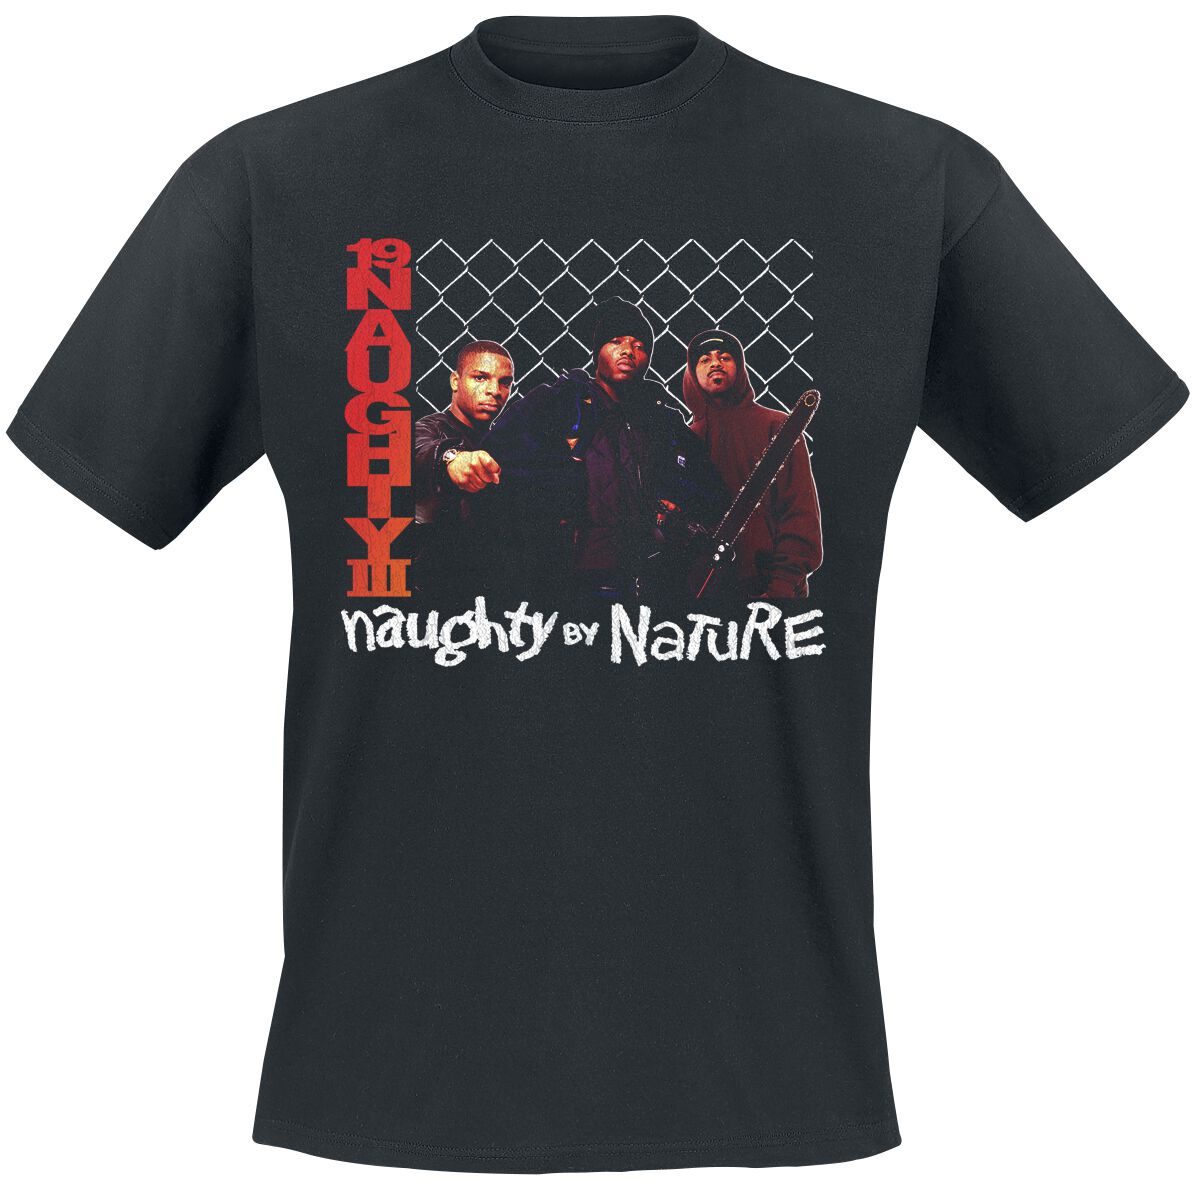 Naughty by Nature T-Shirt - 19 Naughty 111 - S bis 3XL - für Männer - Größe L - schwarz  - Lizenziertes Merchandise!